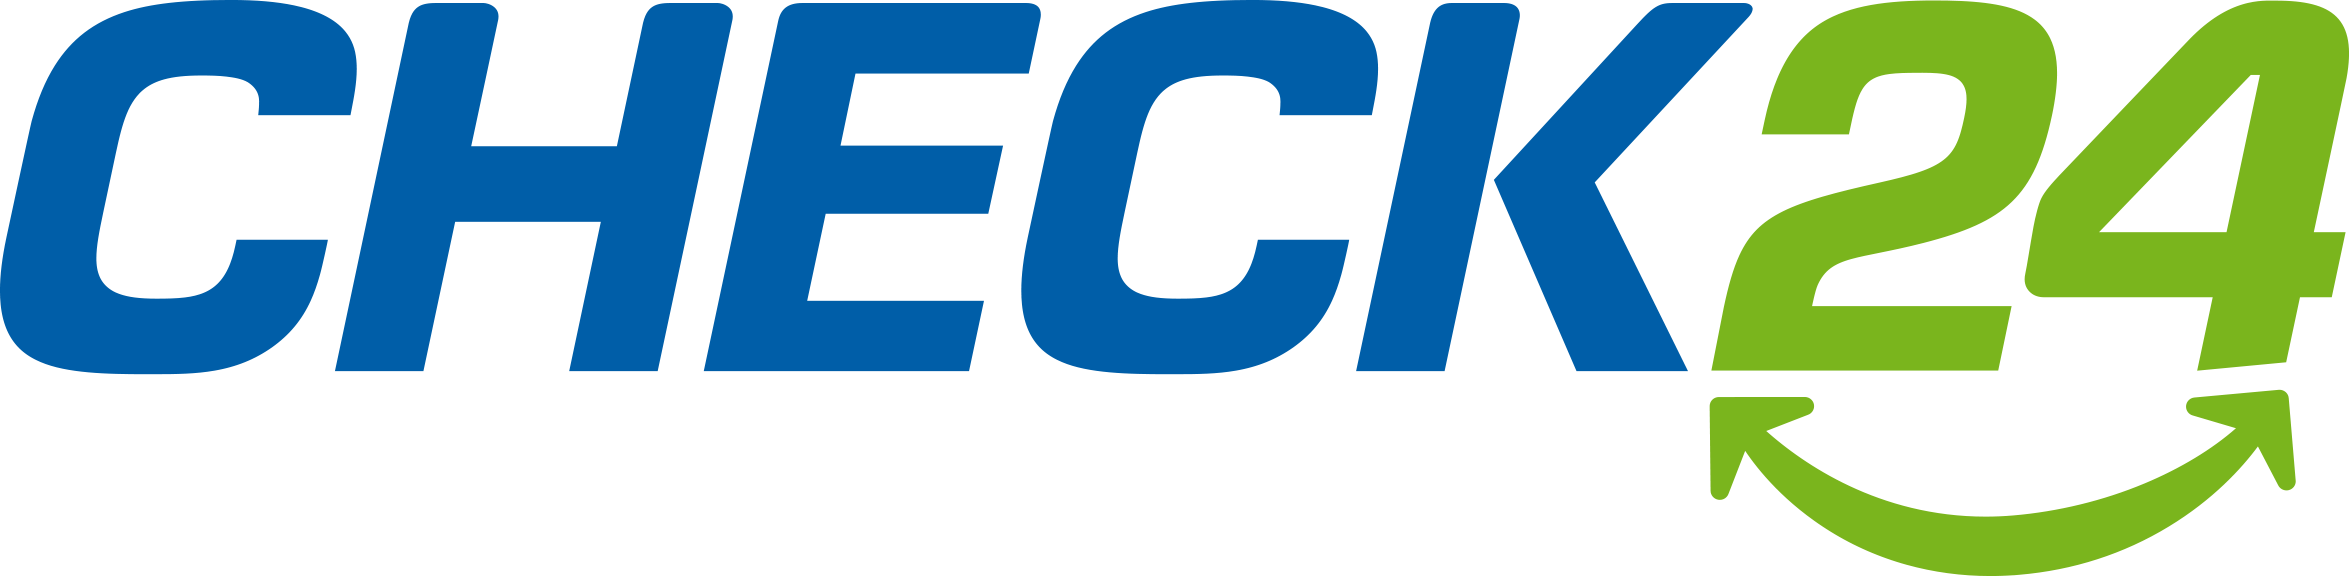 logo_check24_flat-2